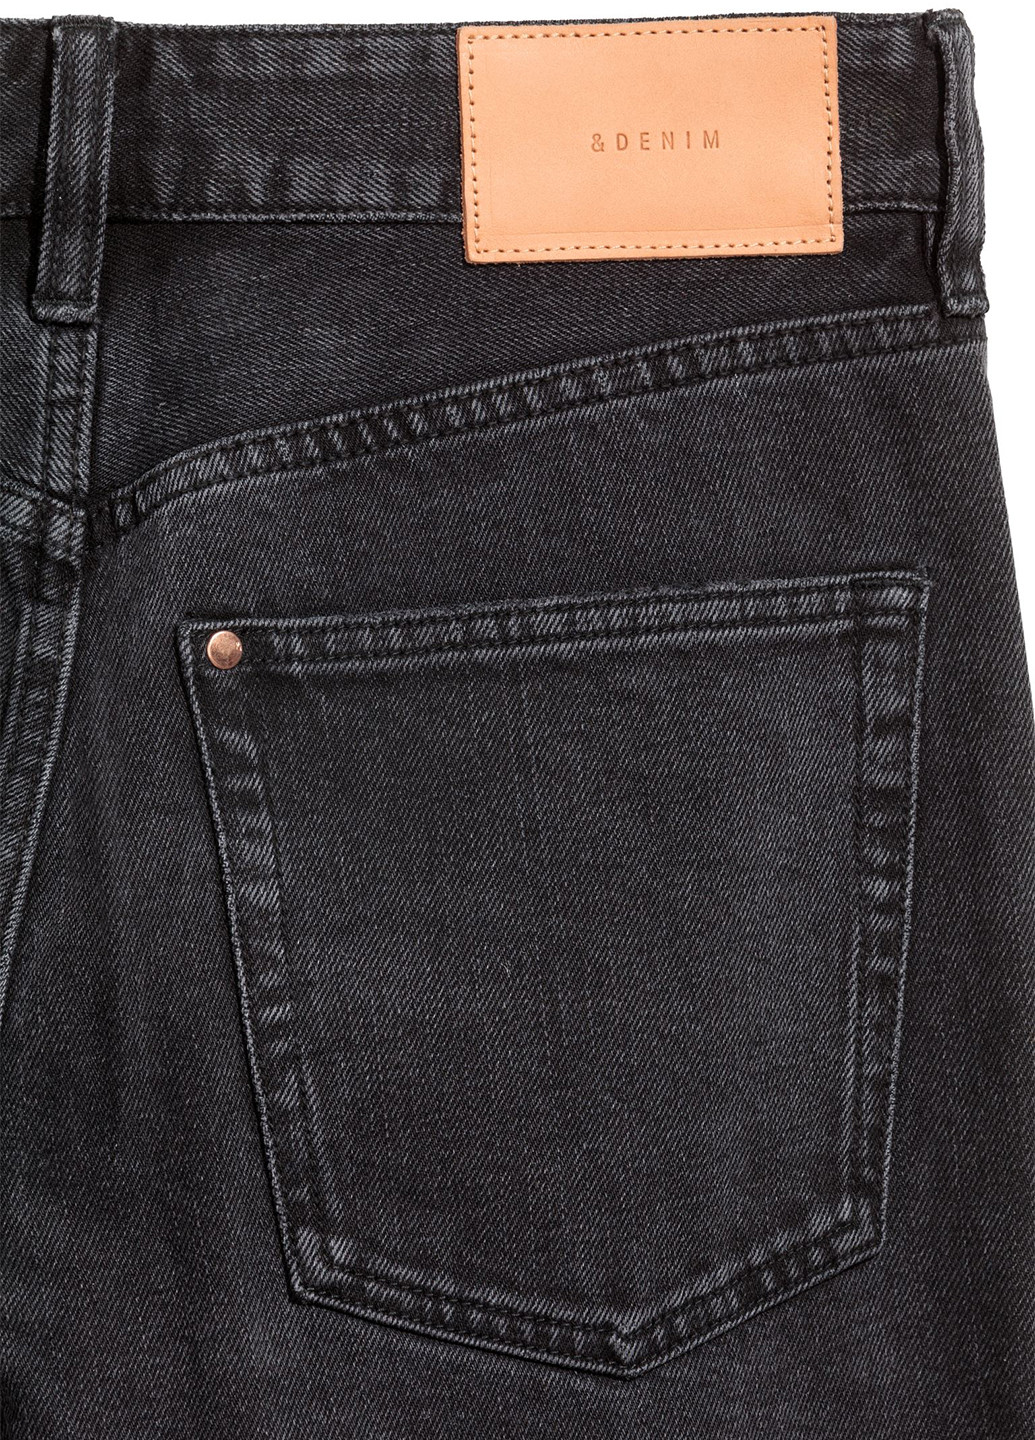 Темно-серые демисезонные зауженные, укороченные джинсы H&M